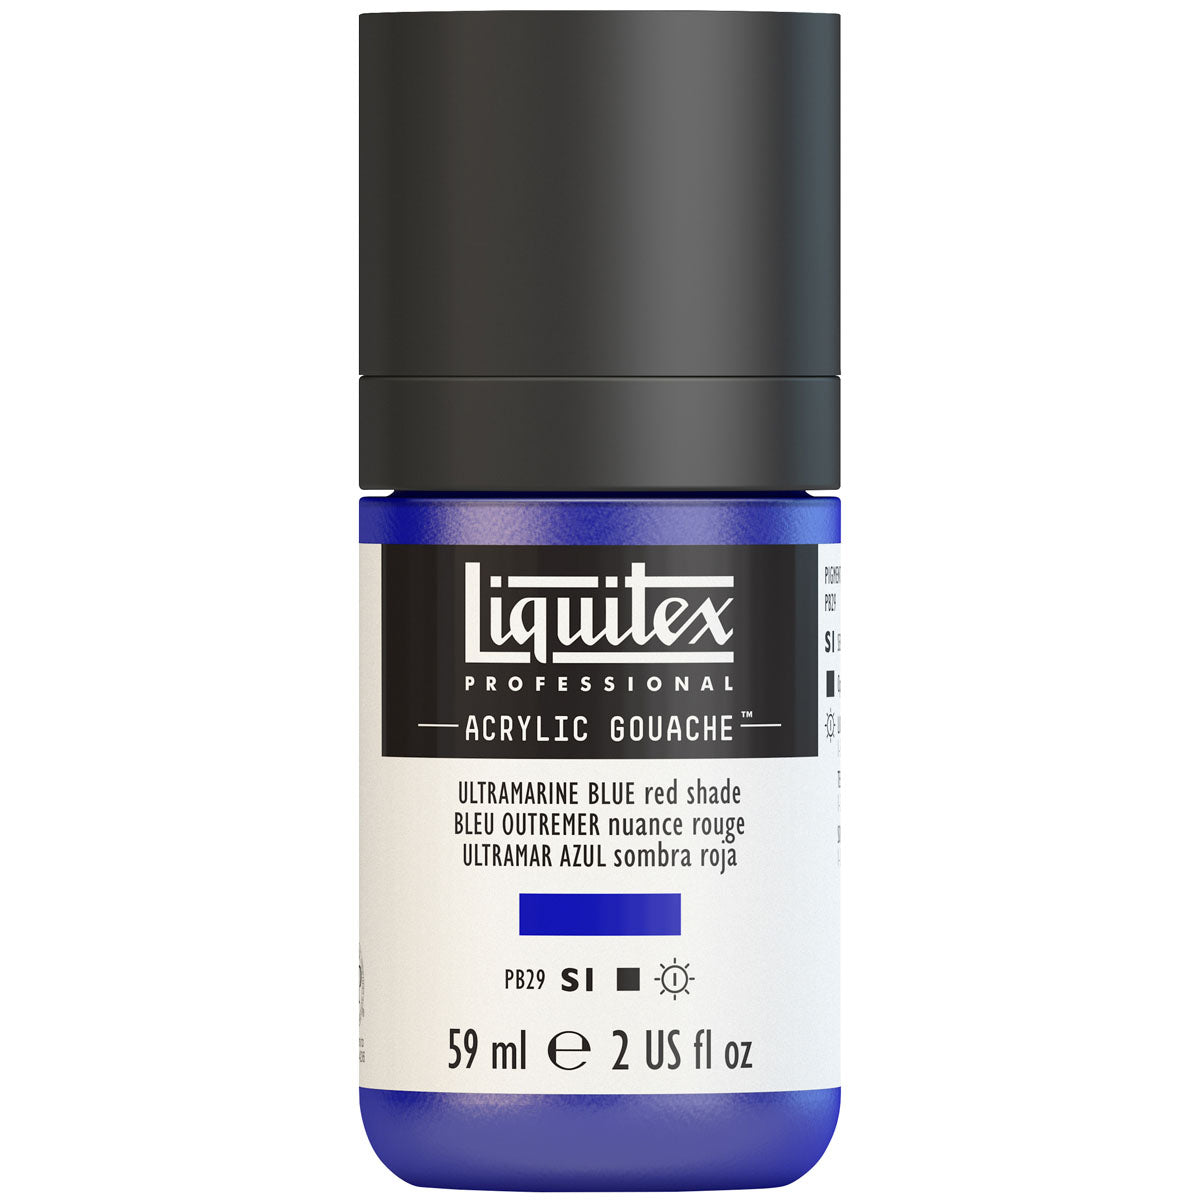 Liquitex - Acryl Gouache 59ml S1 - Ultramarine Blue Red Shade